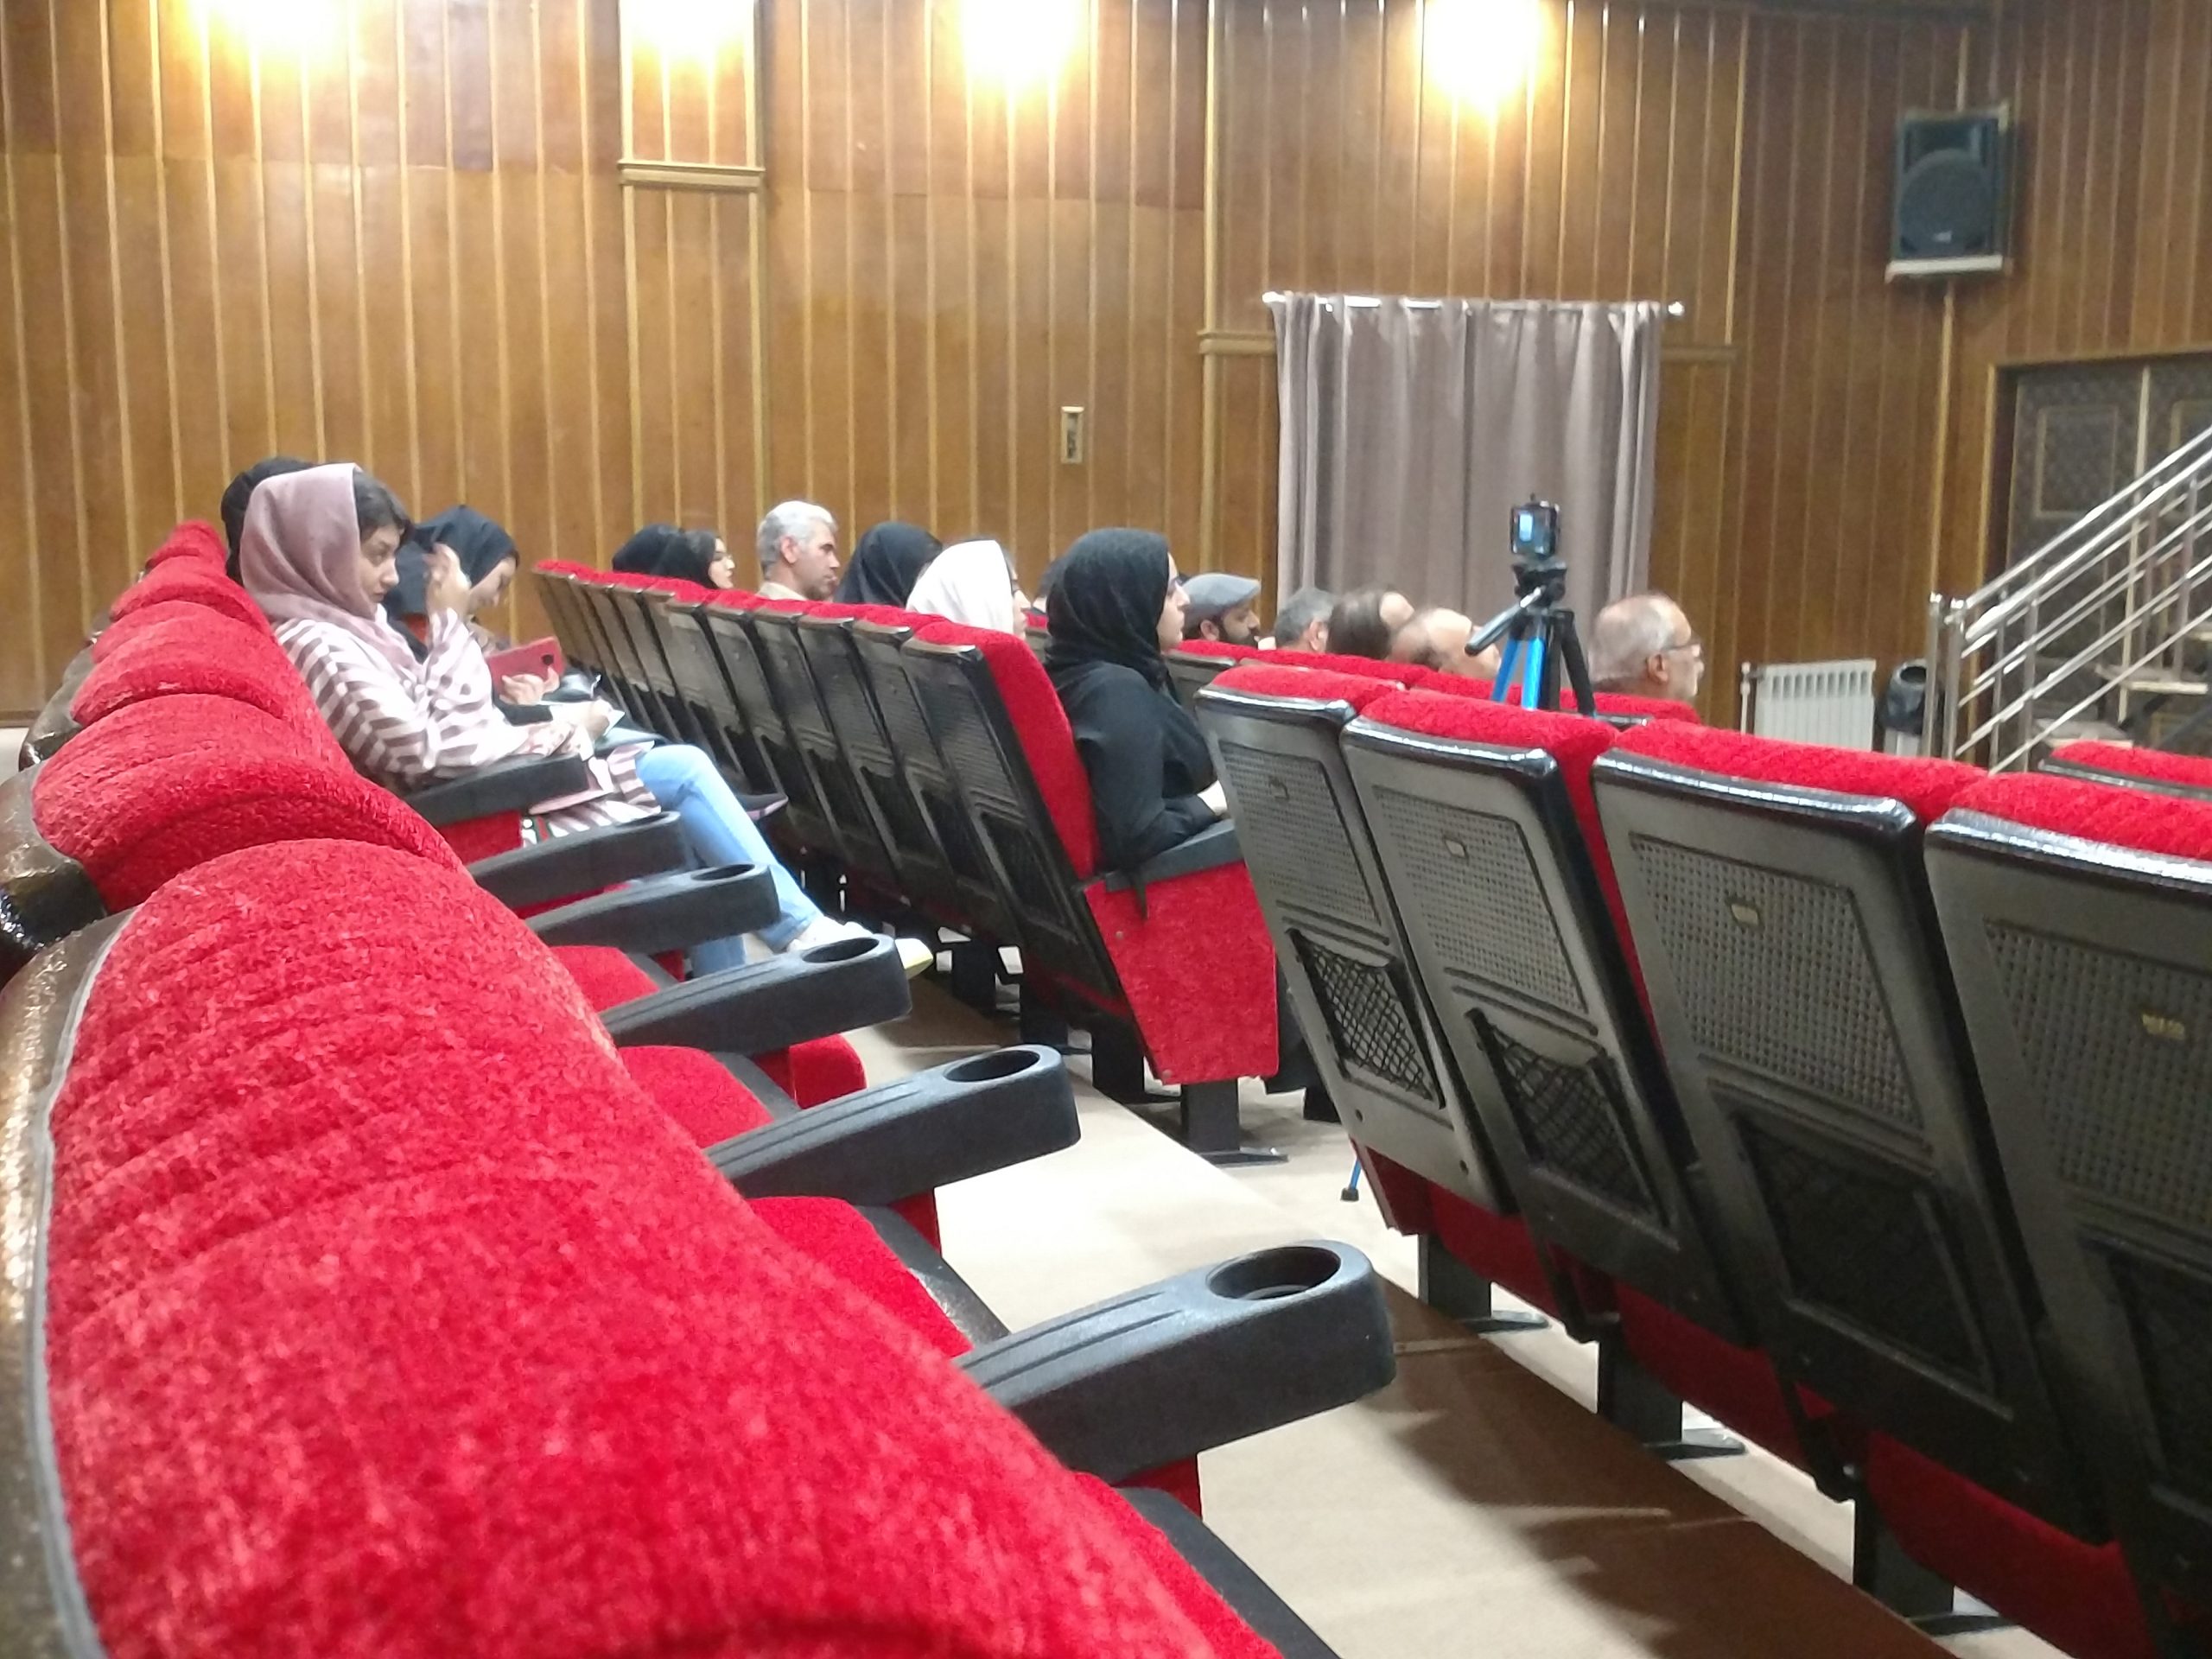 گزارش تصویری « نشست تخصصی مبانی نقد هنری» | انجمن هنرهای تجسمی استان اردبیل ـ جامعه تخصصی هنرهای تجسمی